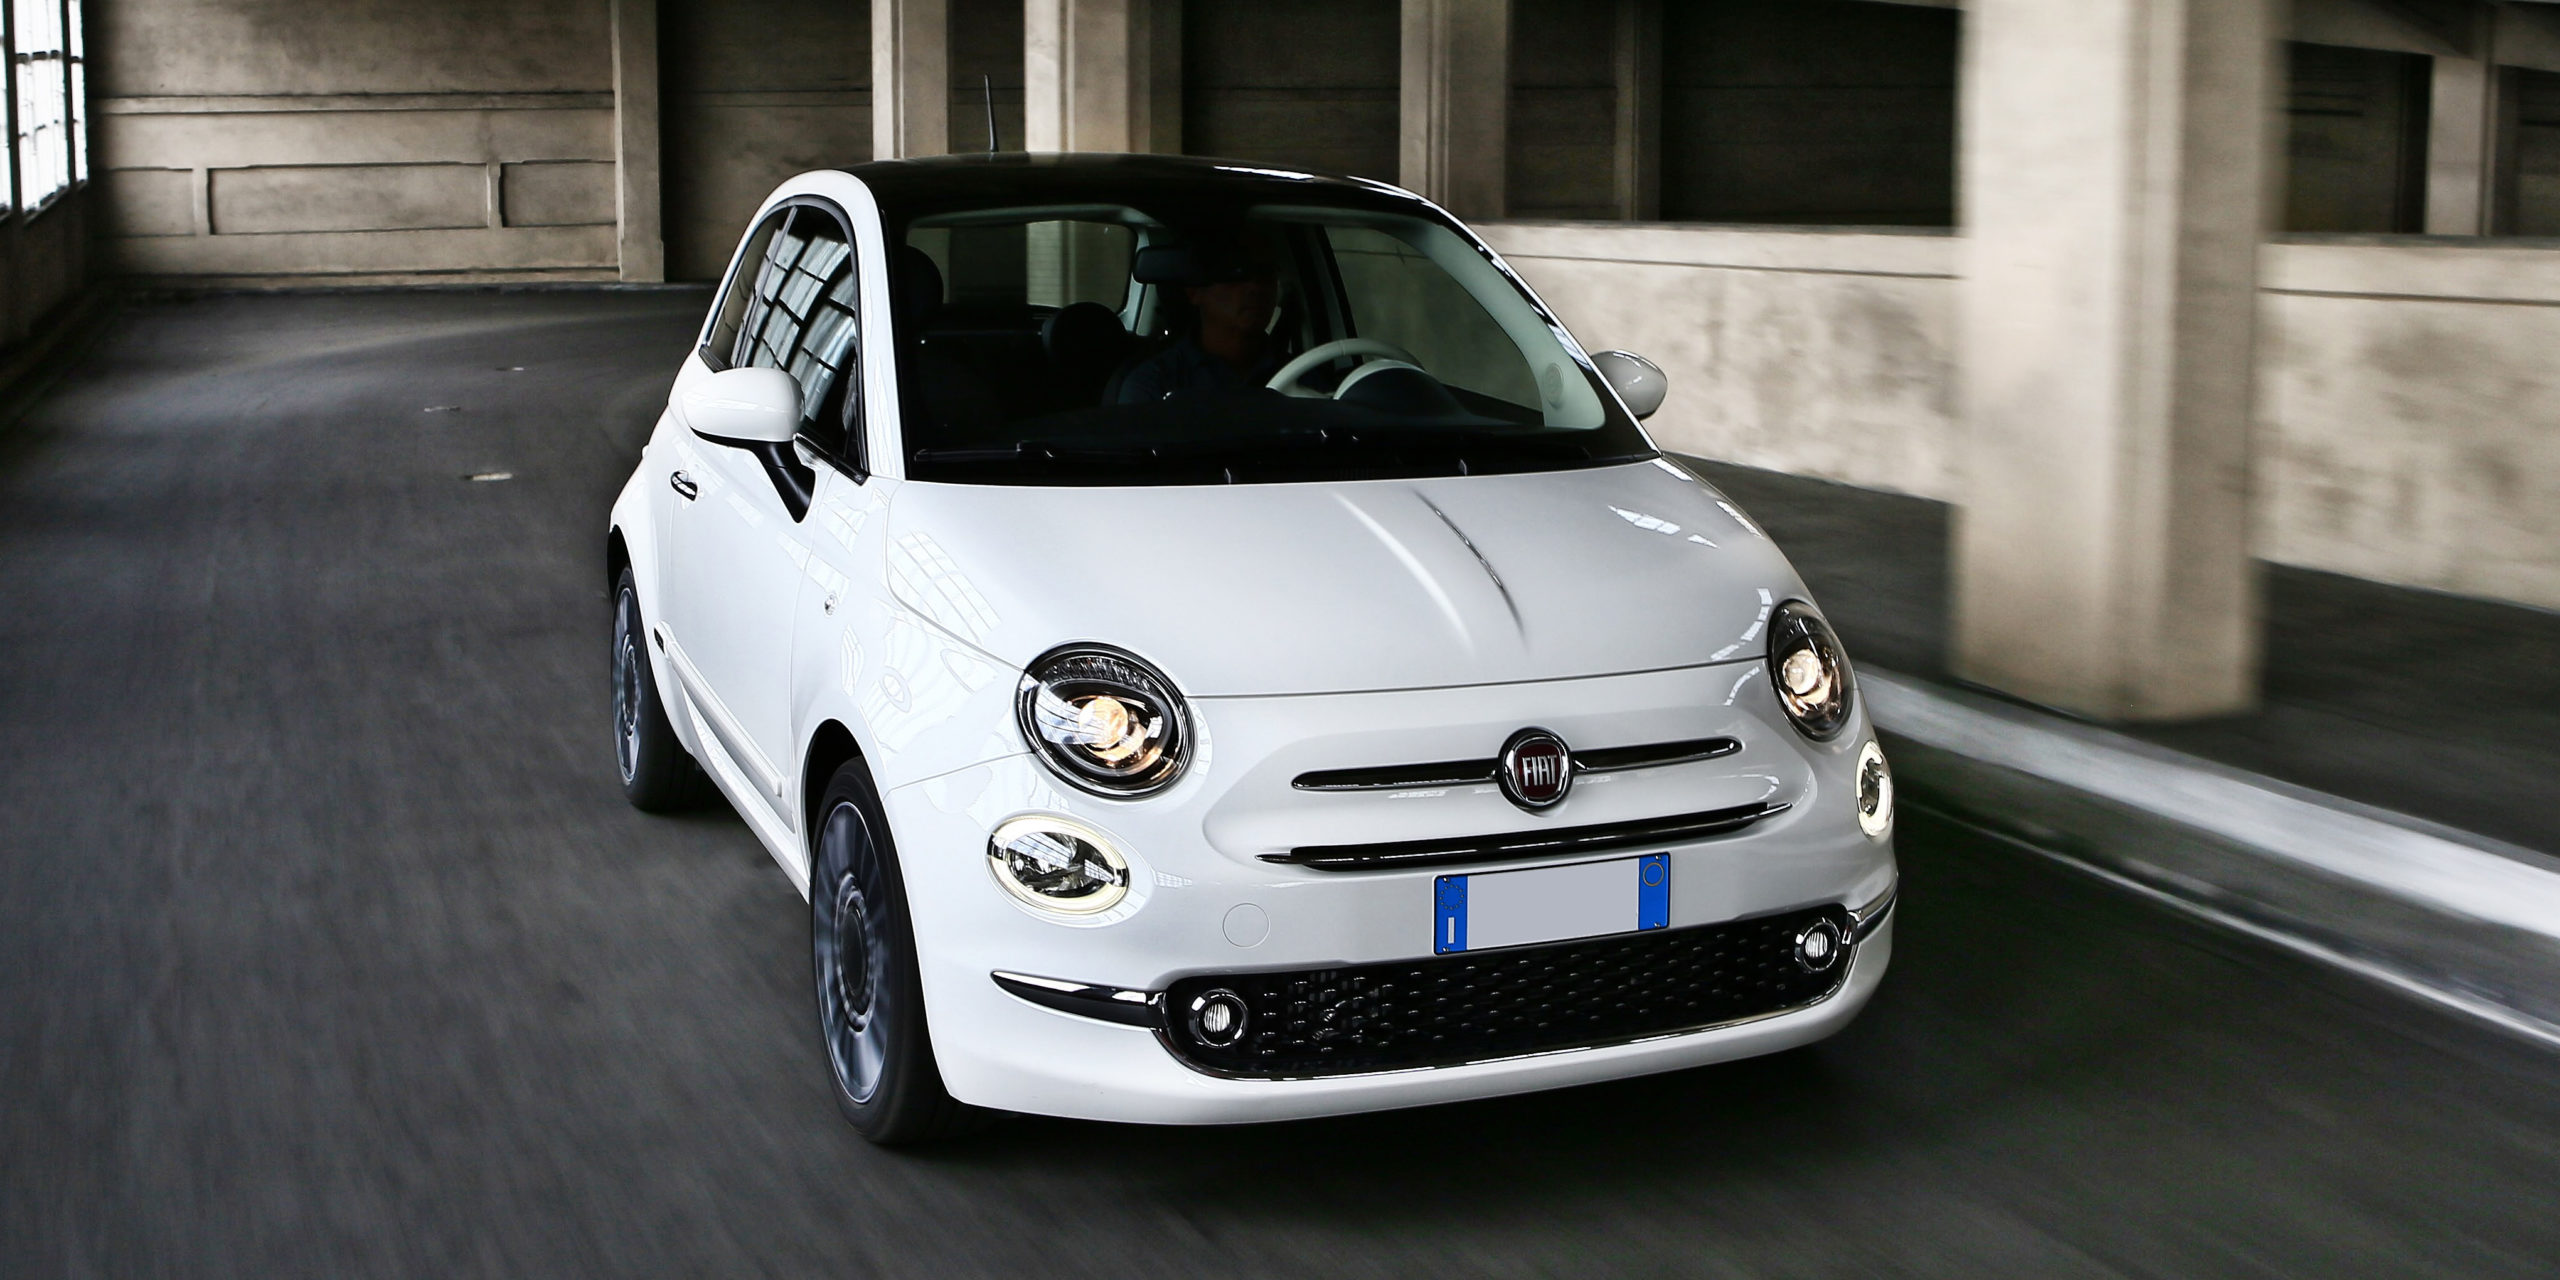 Fiat 500 thế hệ mới  mỹ nhân của làng xe chạy điện  Báo Dân trí